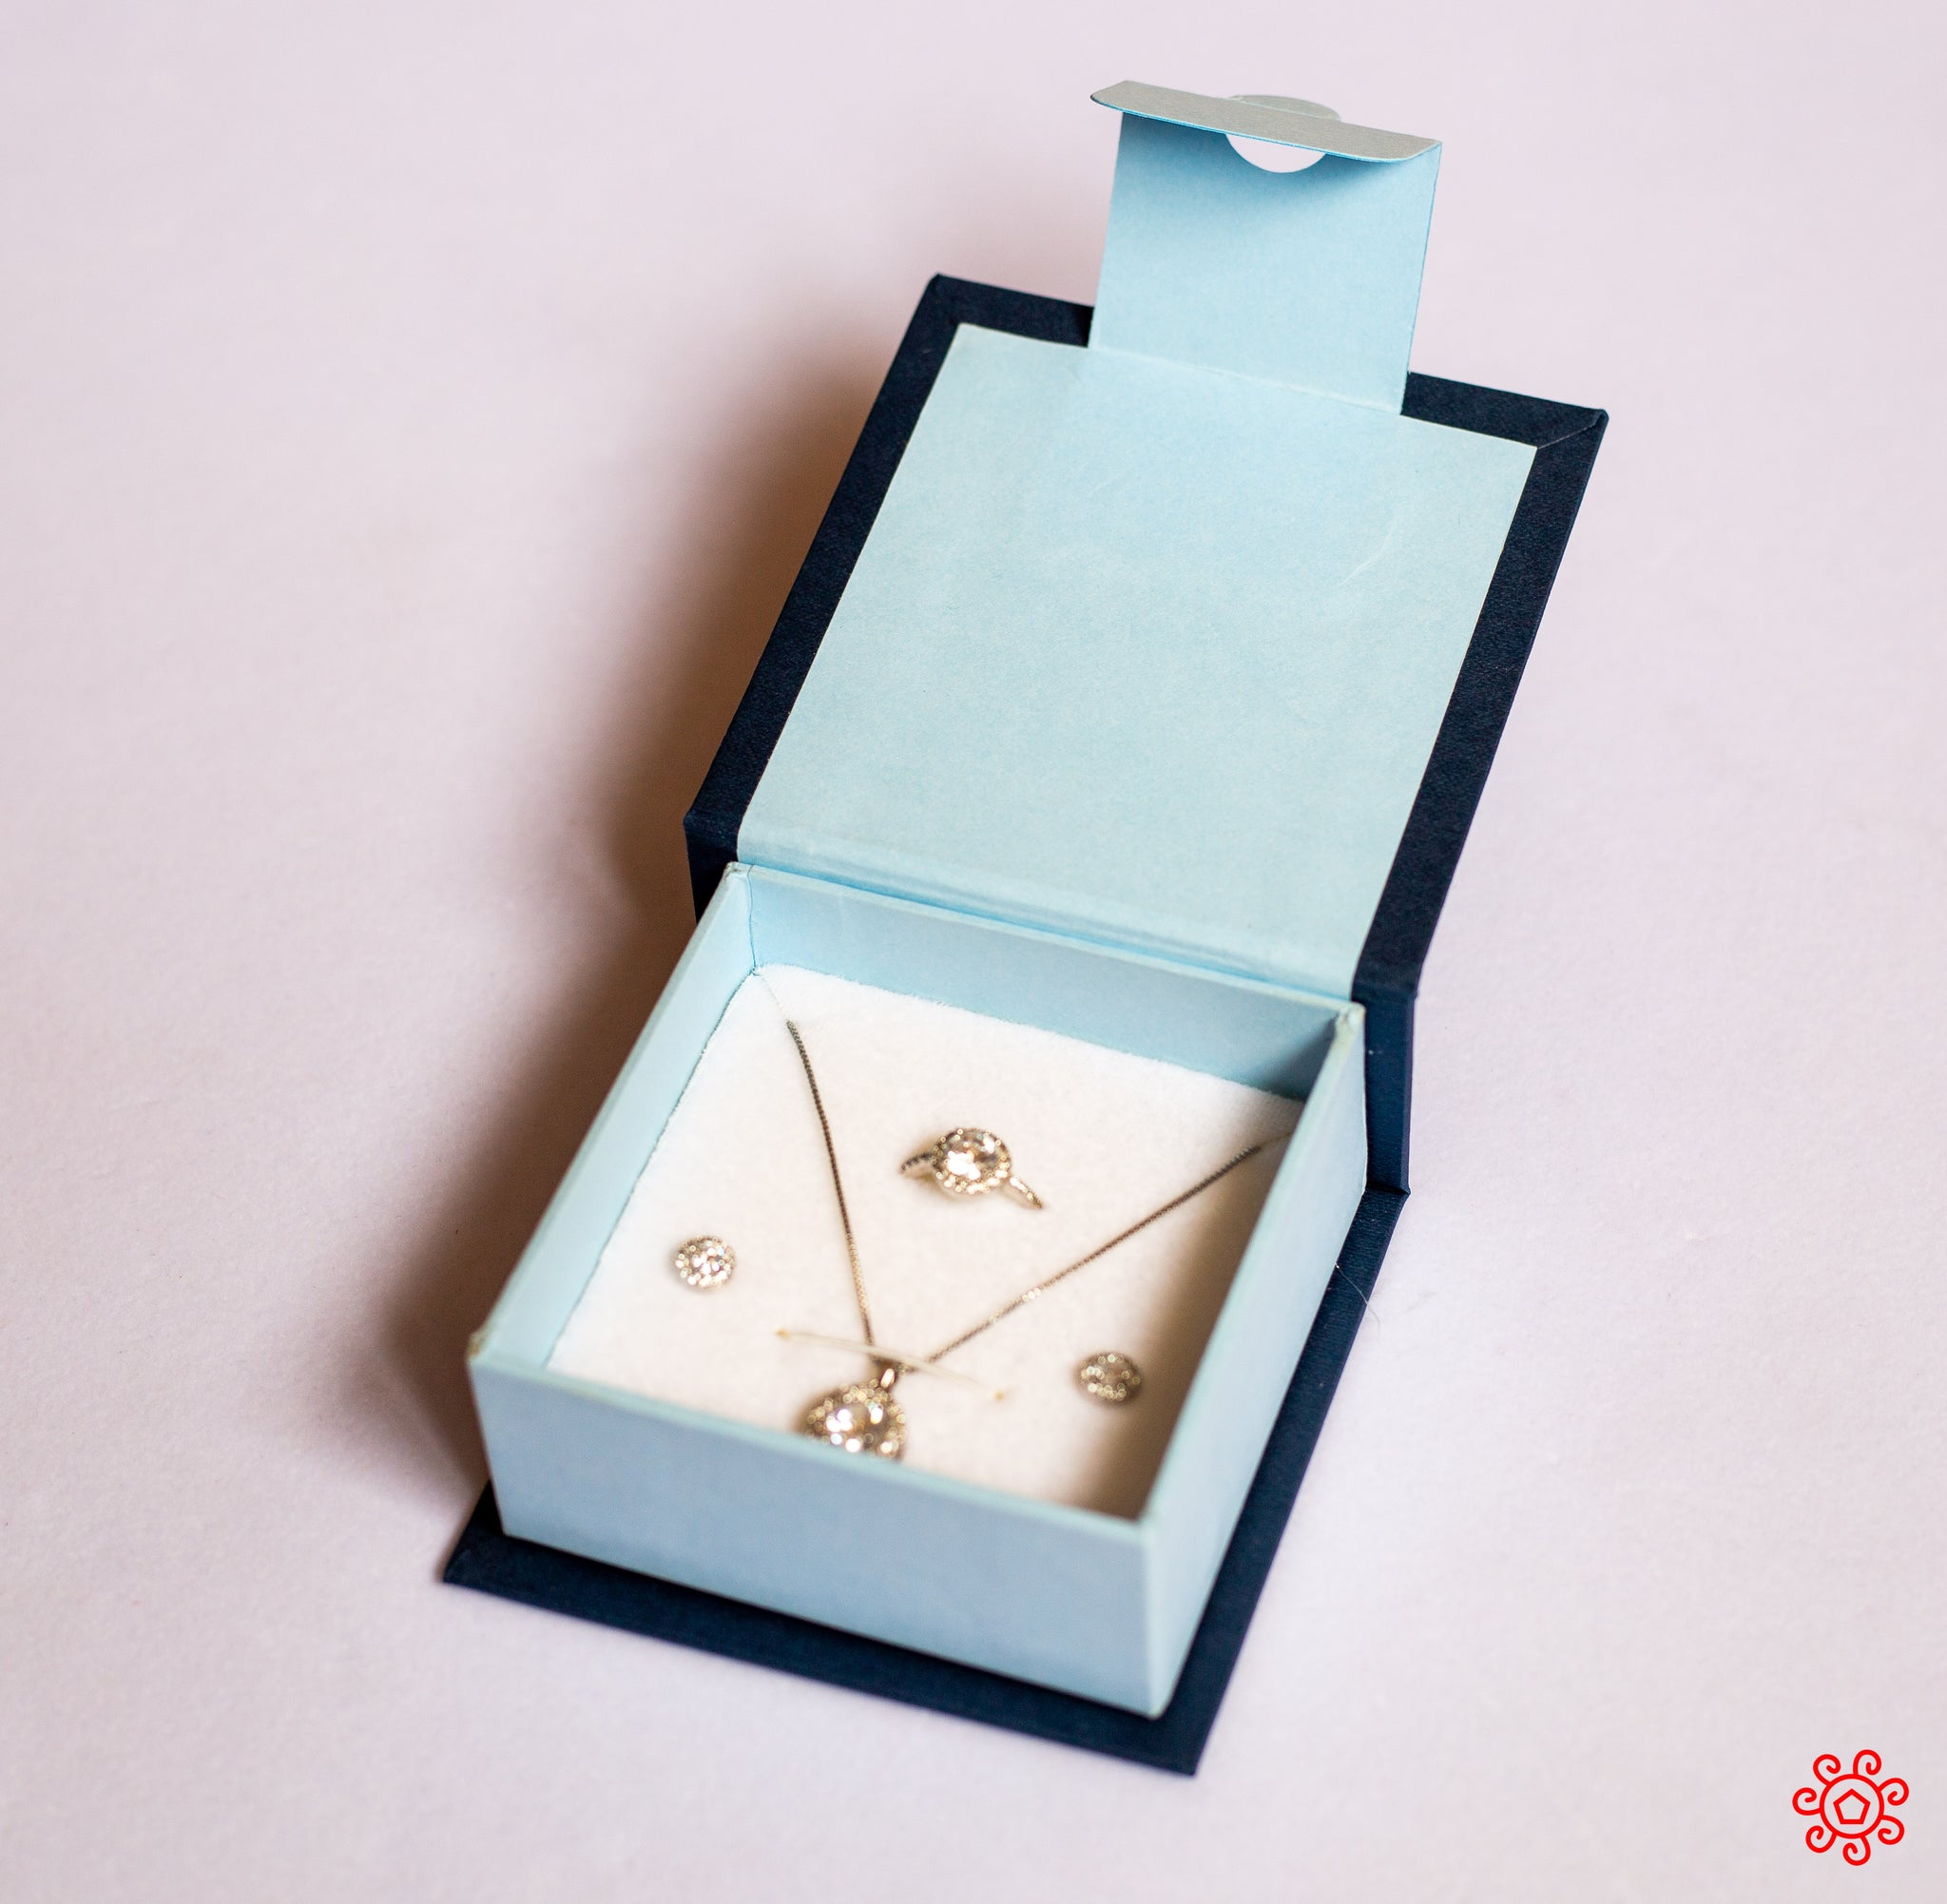 Handmade Jewelry Box - HDBX117